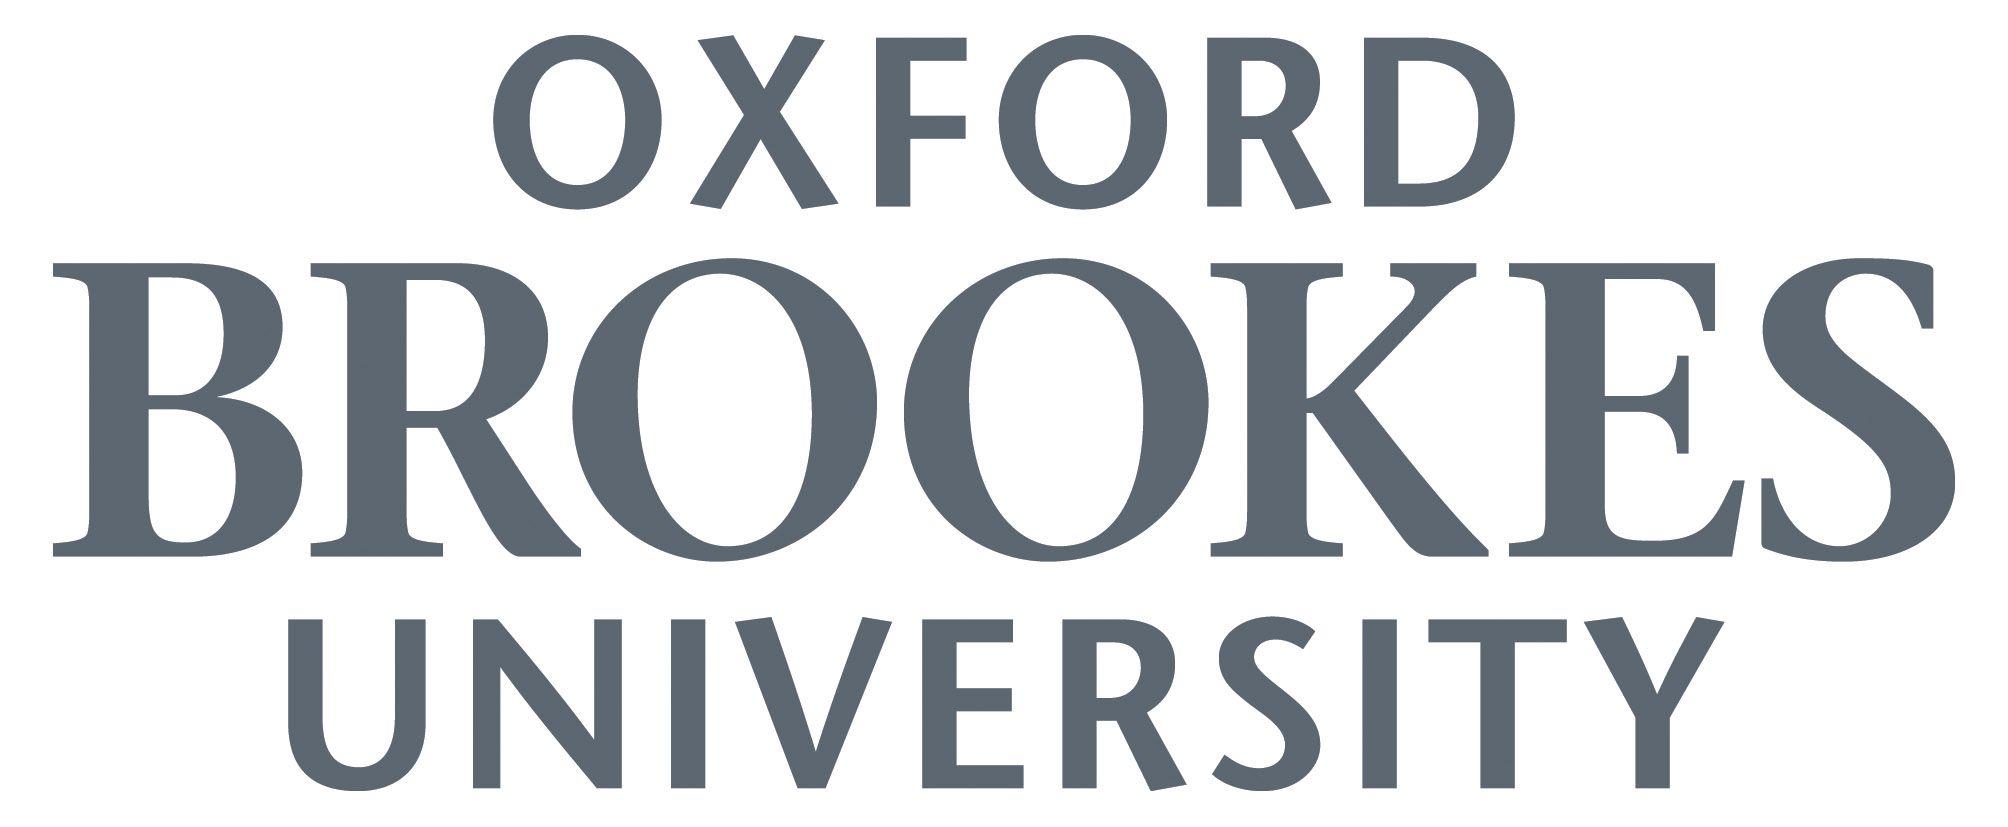 Oxford Logo - Oxford Brookes logos - Oxford Brookes University